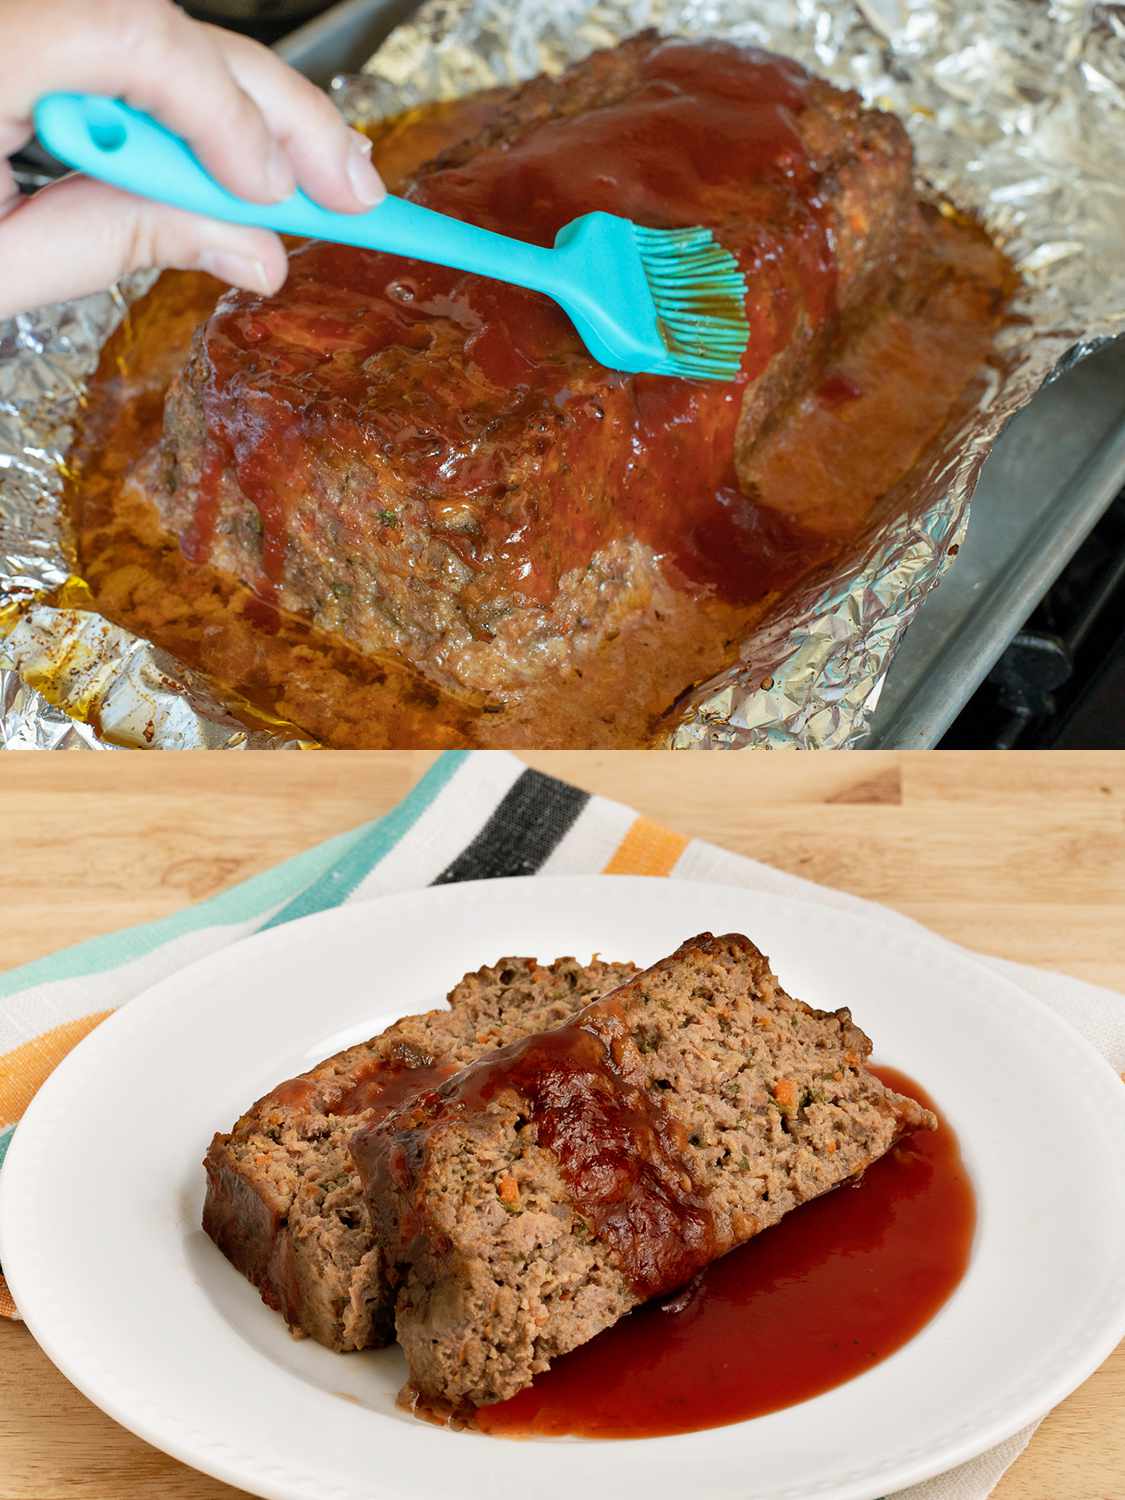 Meatloaf glaze being brushed on baked meatloaf, two slices of meatloaf served with extra glaze